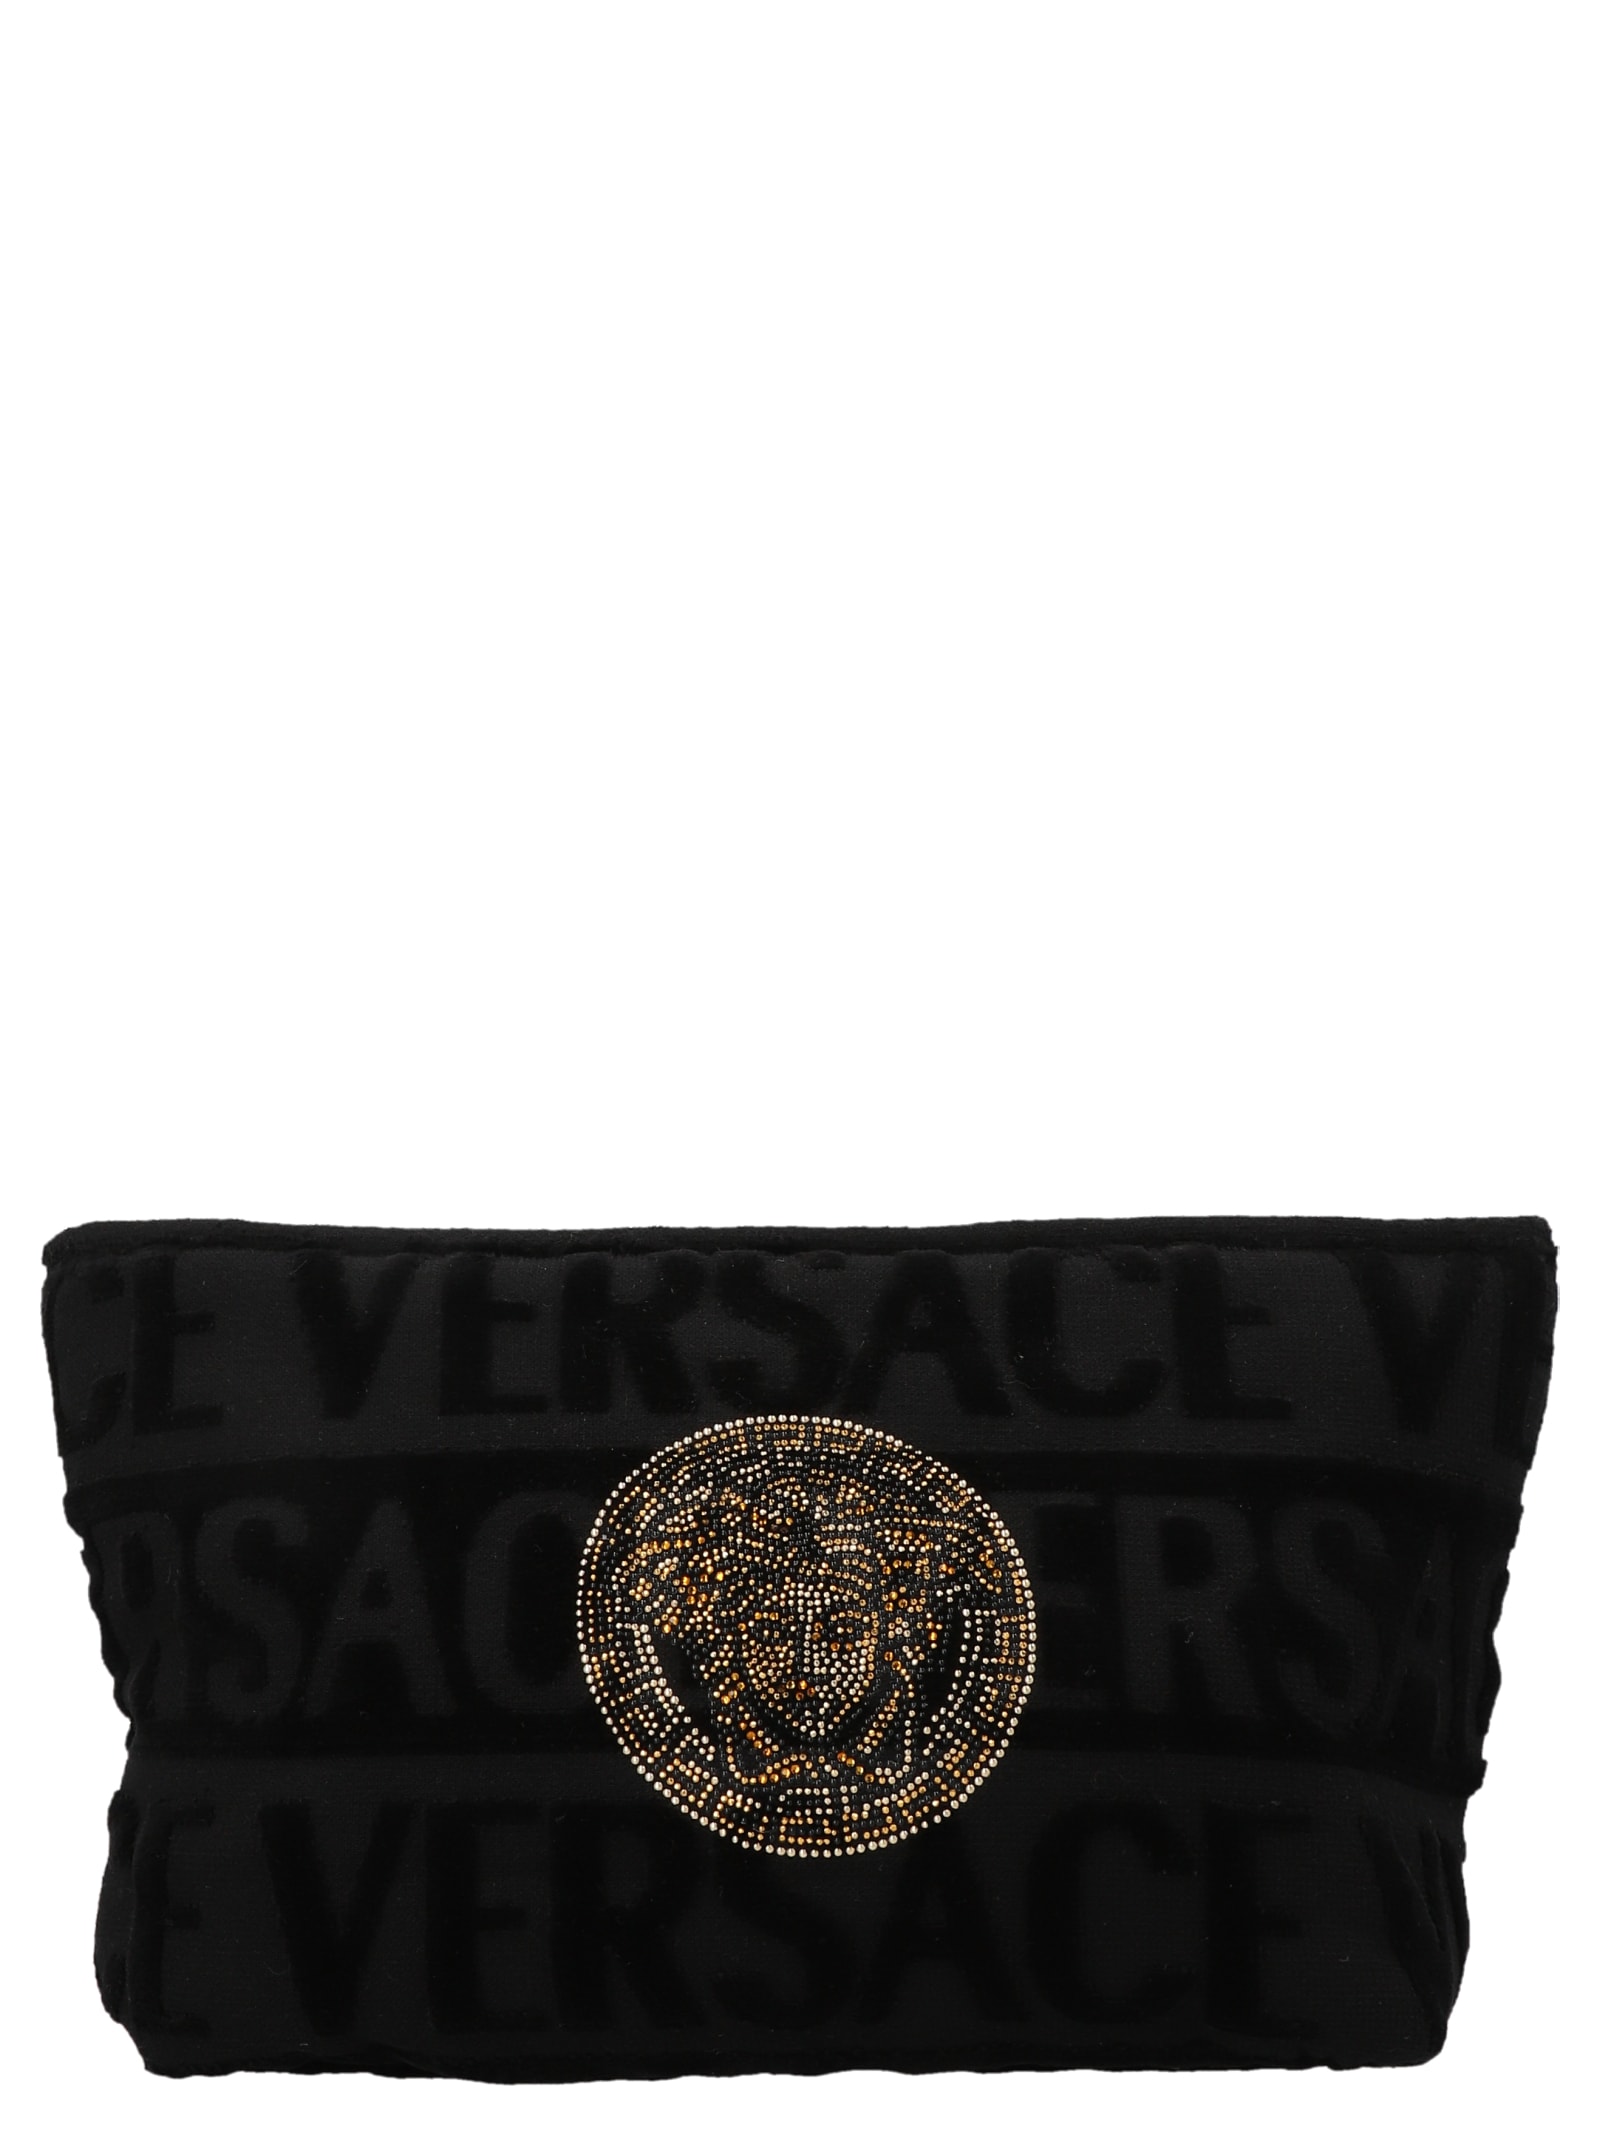 Versace Medusa Beauty Case In Black